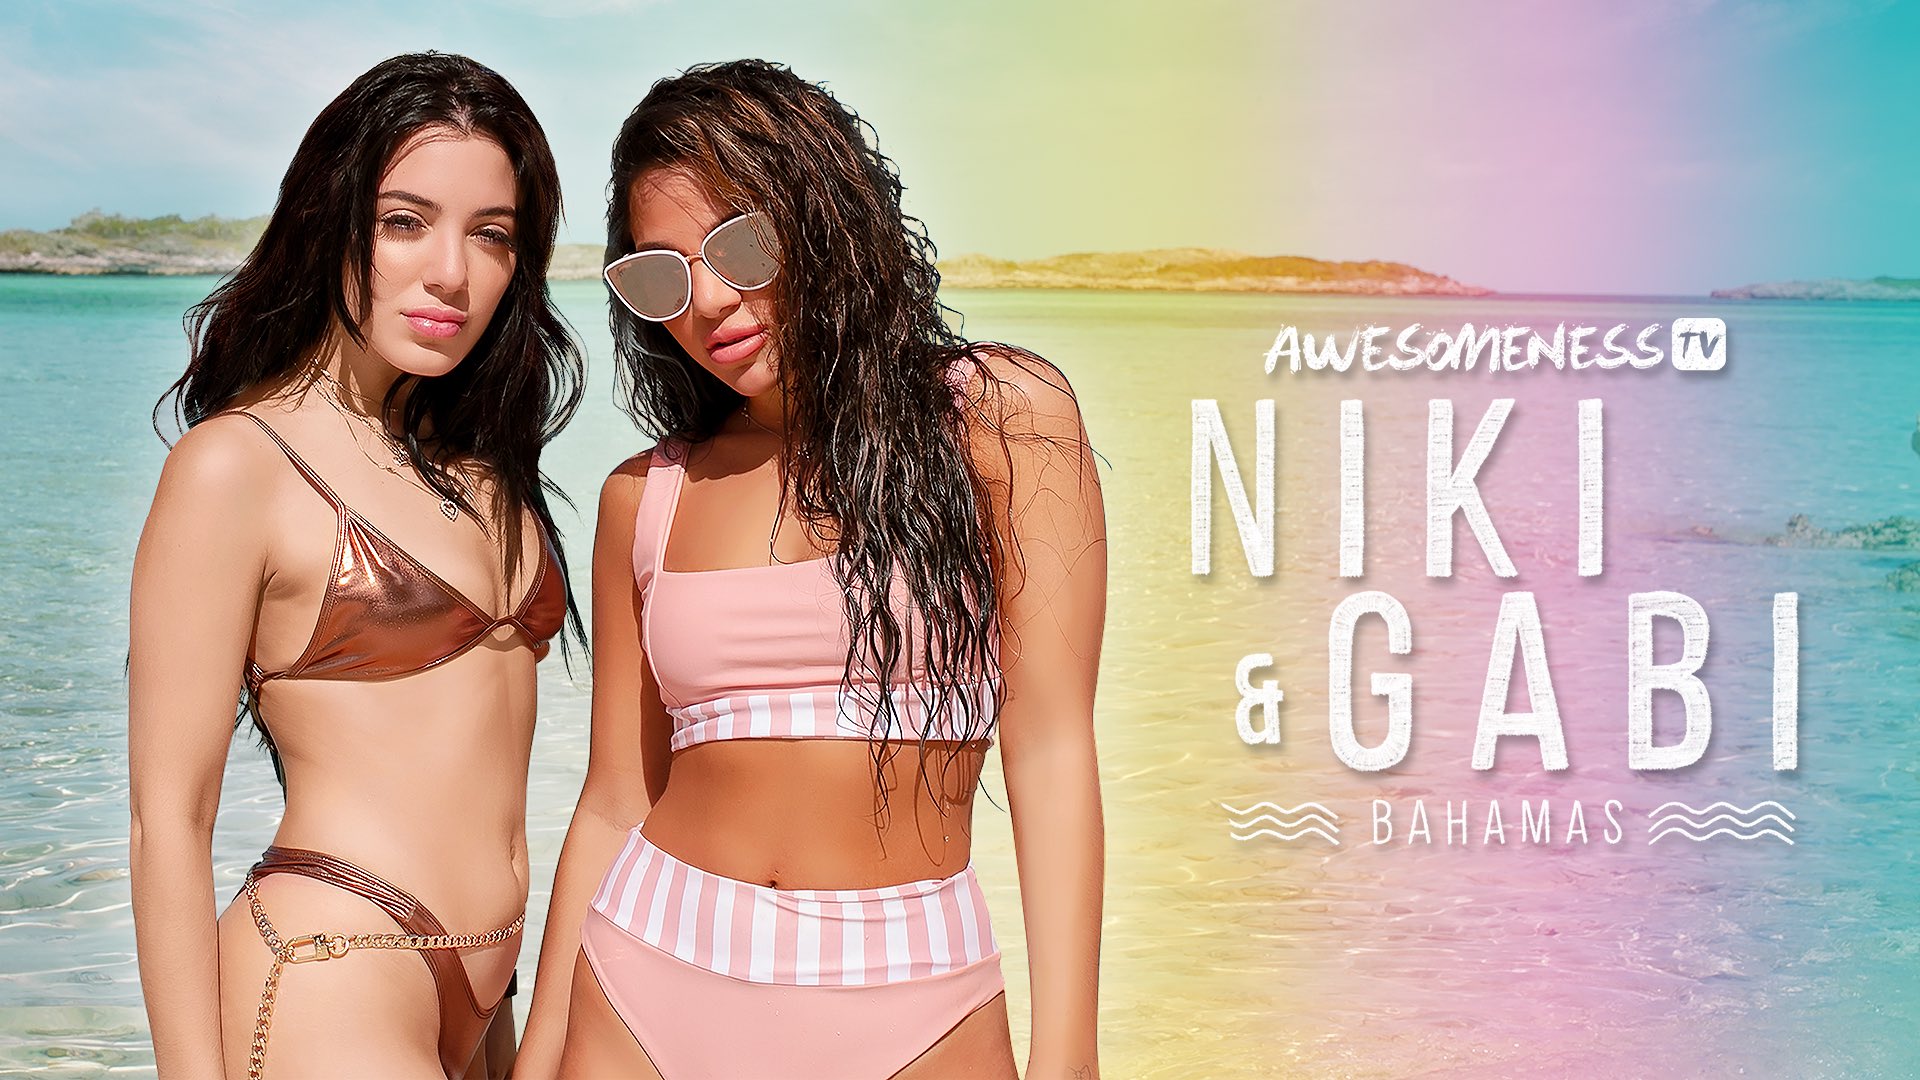 Niki and Gabi Take Bahamas | Niki and Gabi Wiki | Fandom